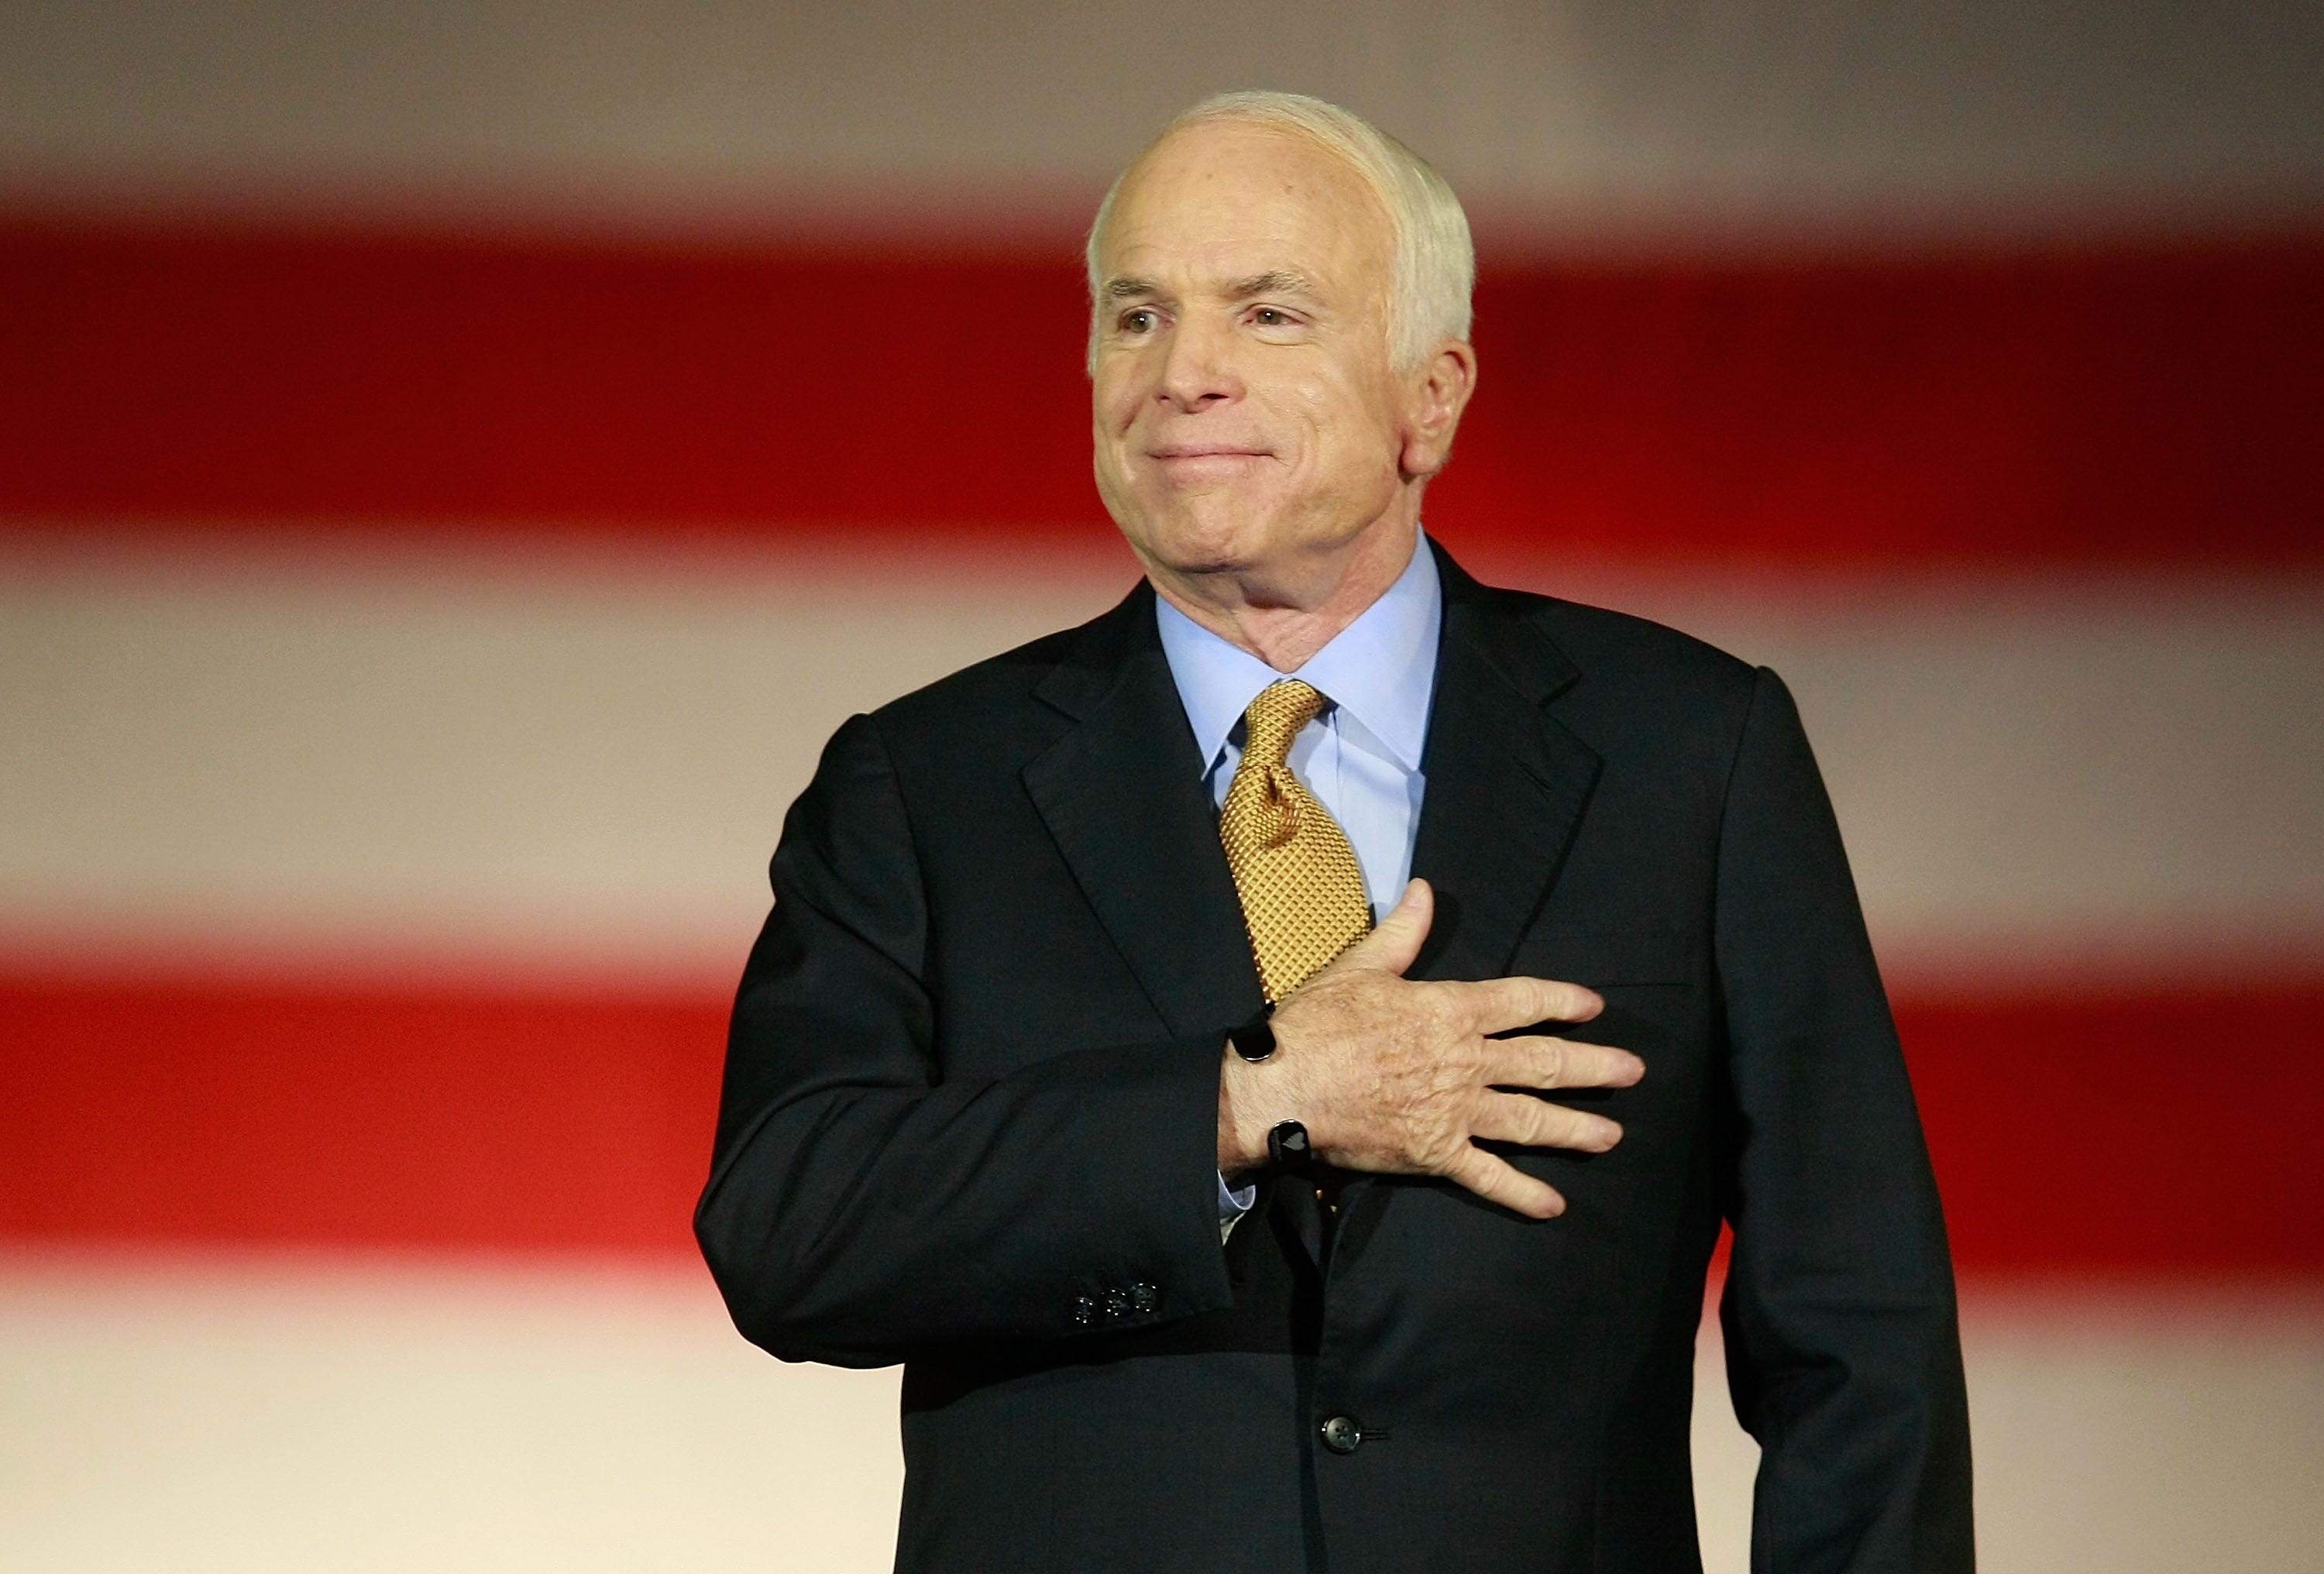 McCain's cancer, glioblastoma, described as 'very aggressive tumor'